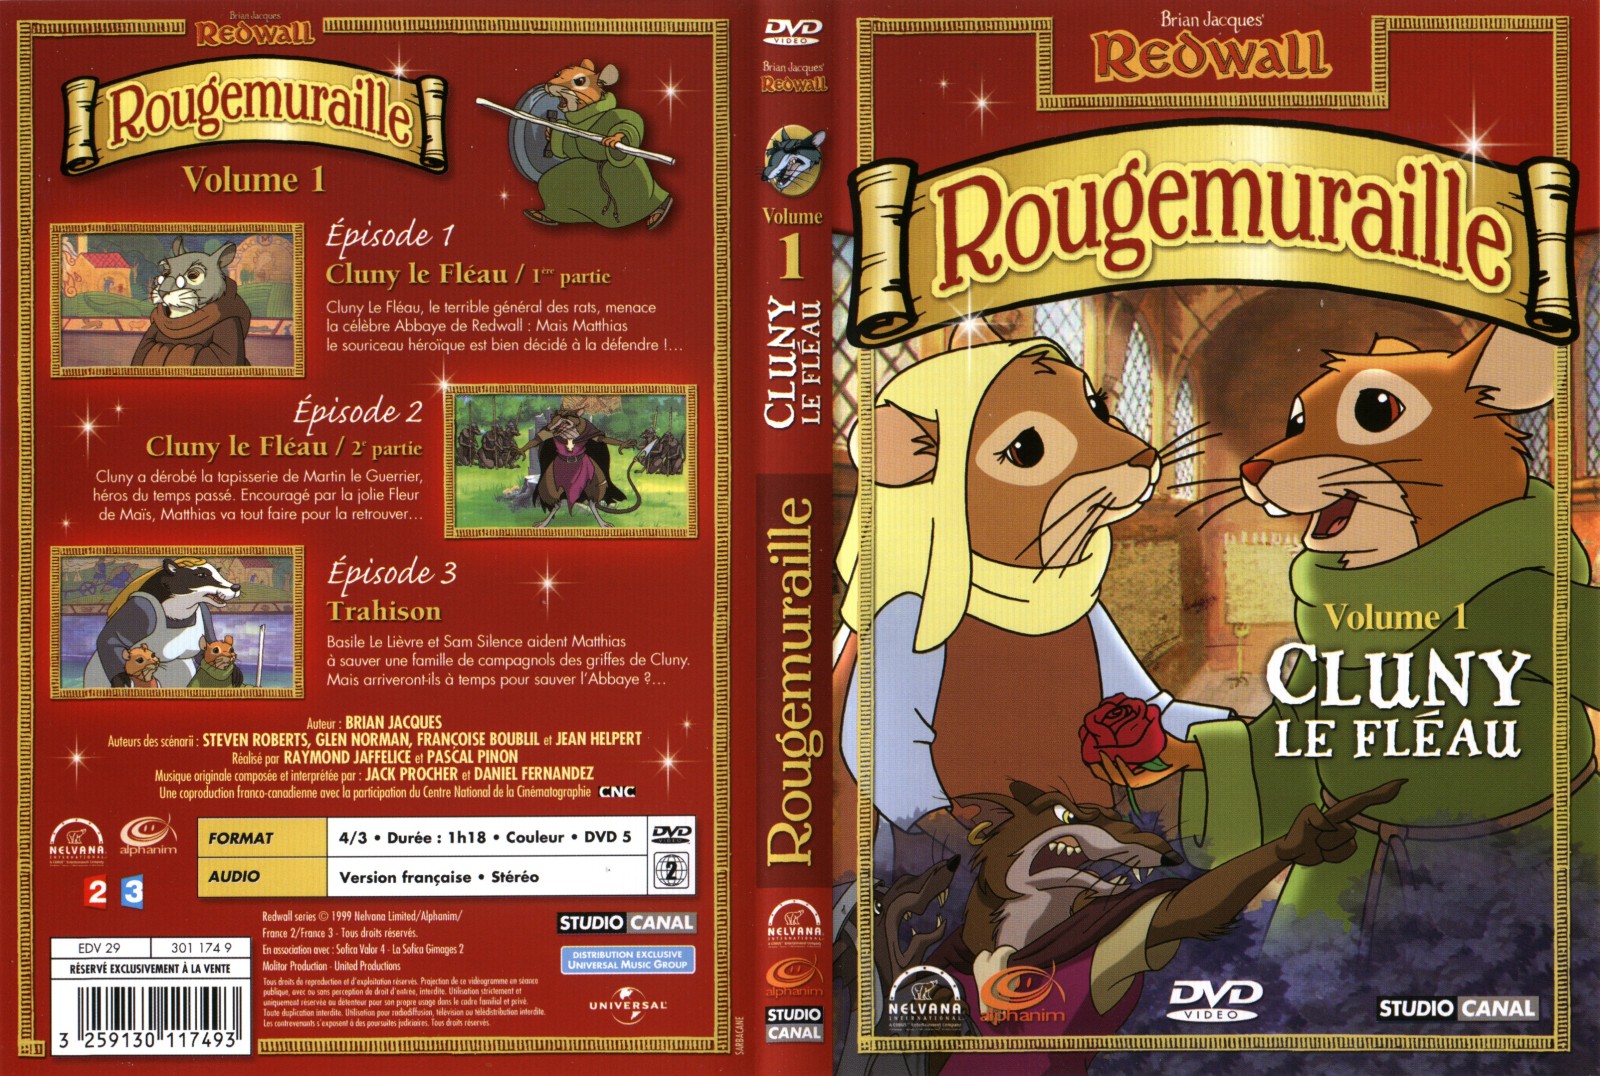 Jaquette DVD Rougemuraille vol 1